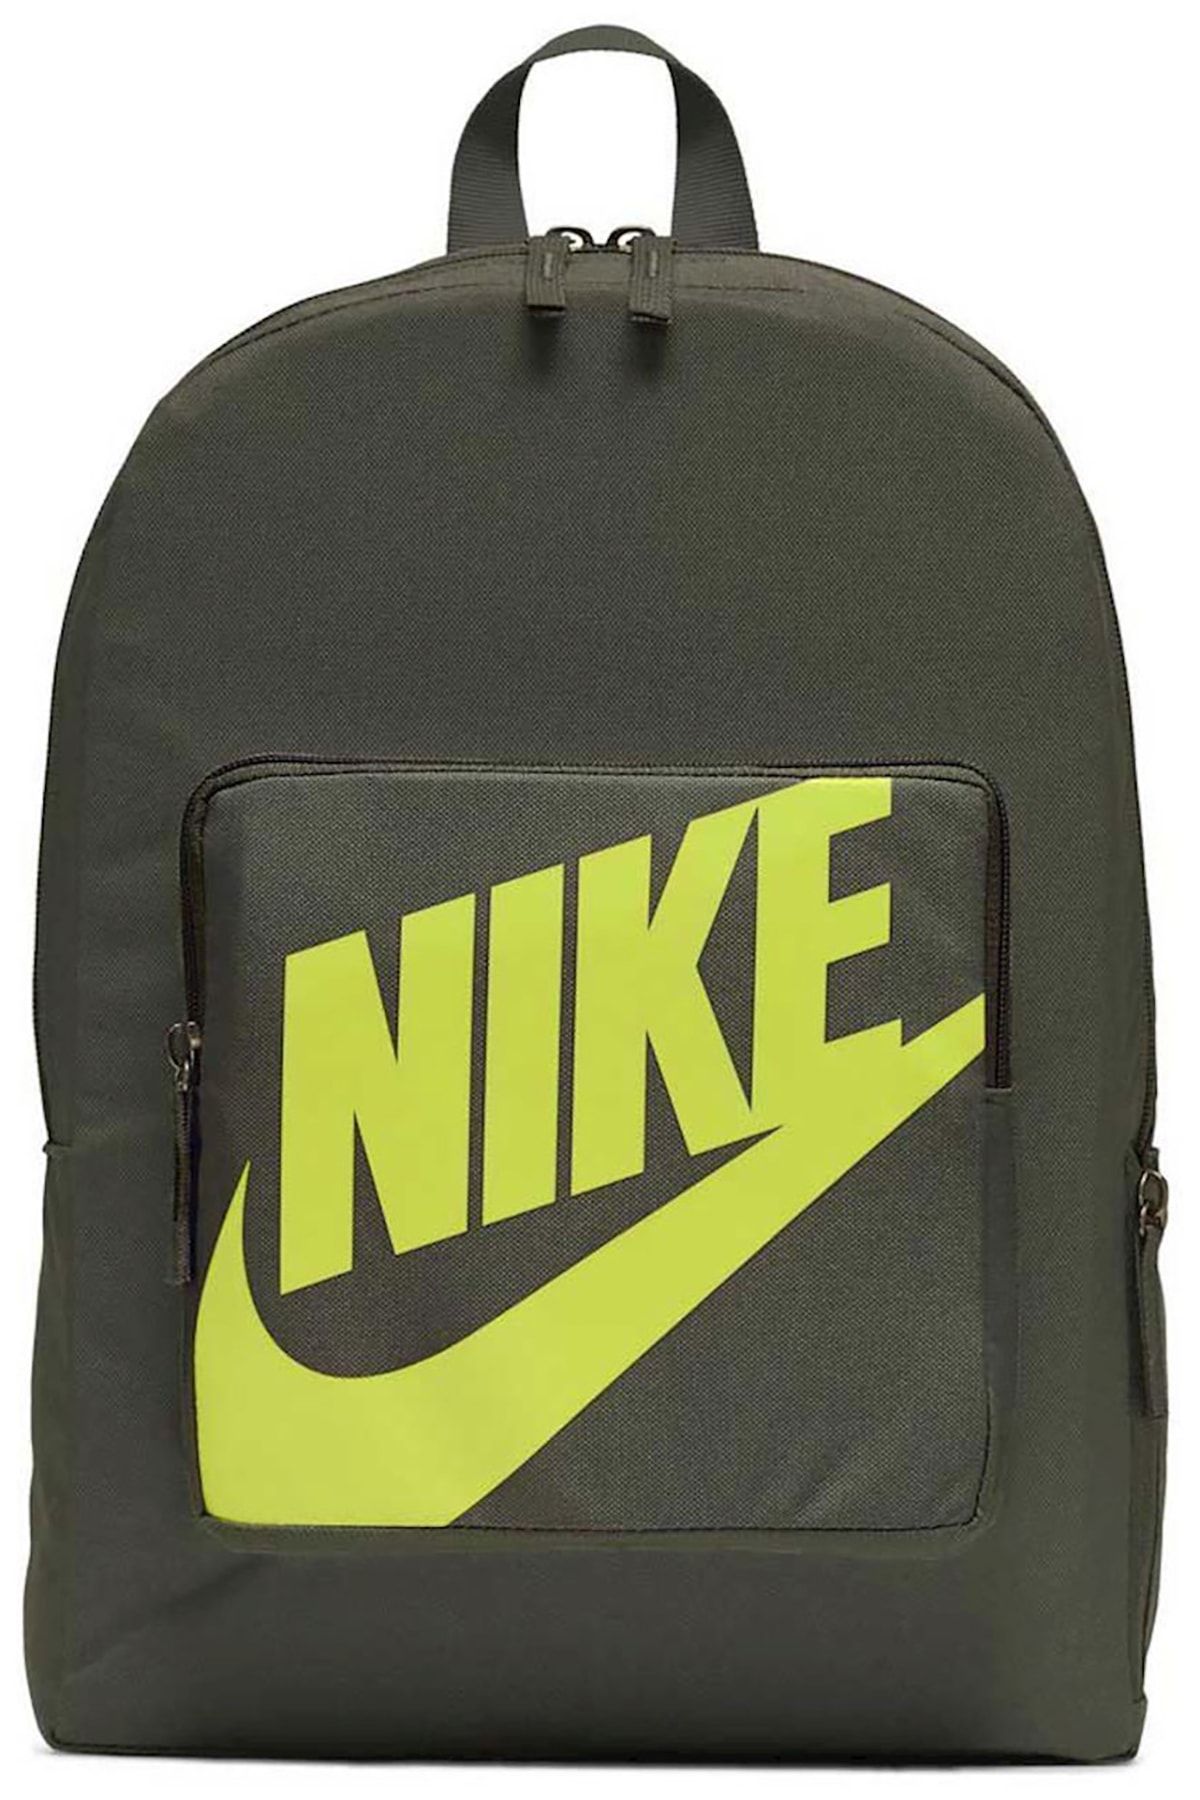 Nike Yeşil Sırt Çantası Okul Çantası 16 lt Ba5928-325